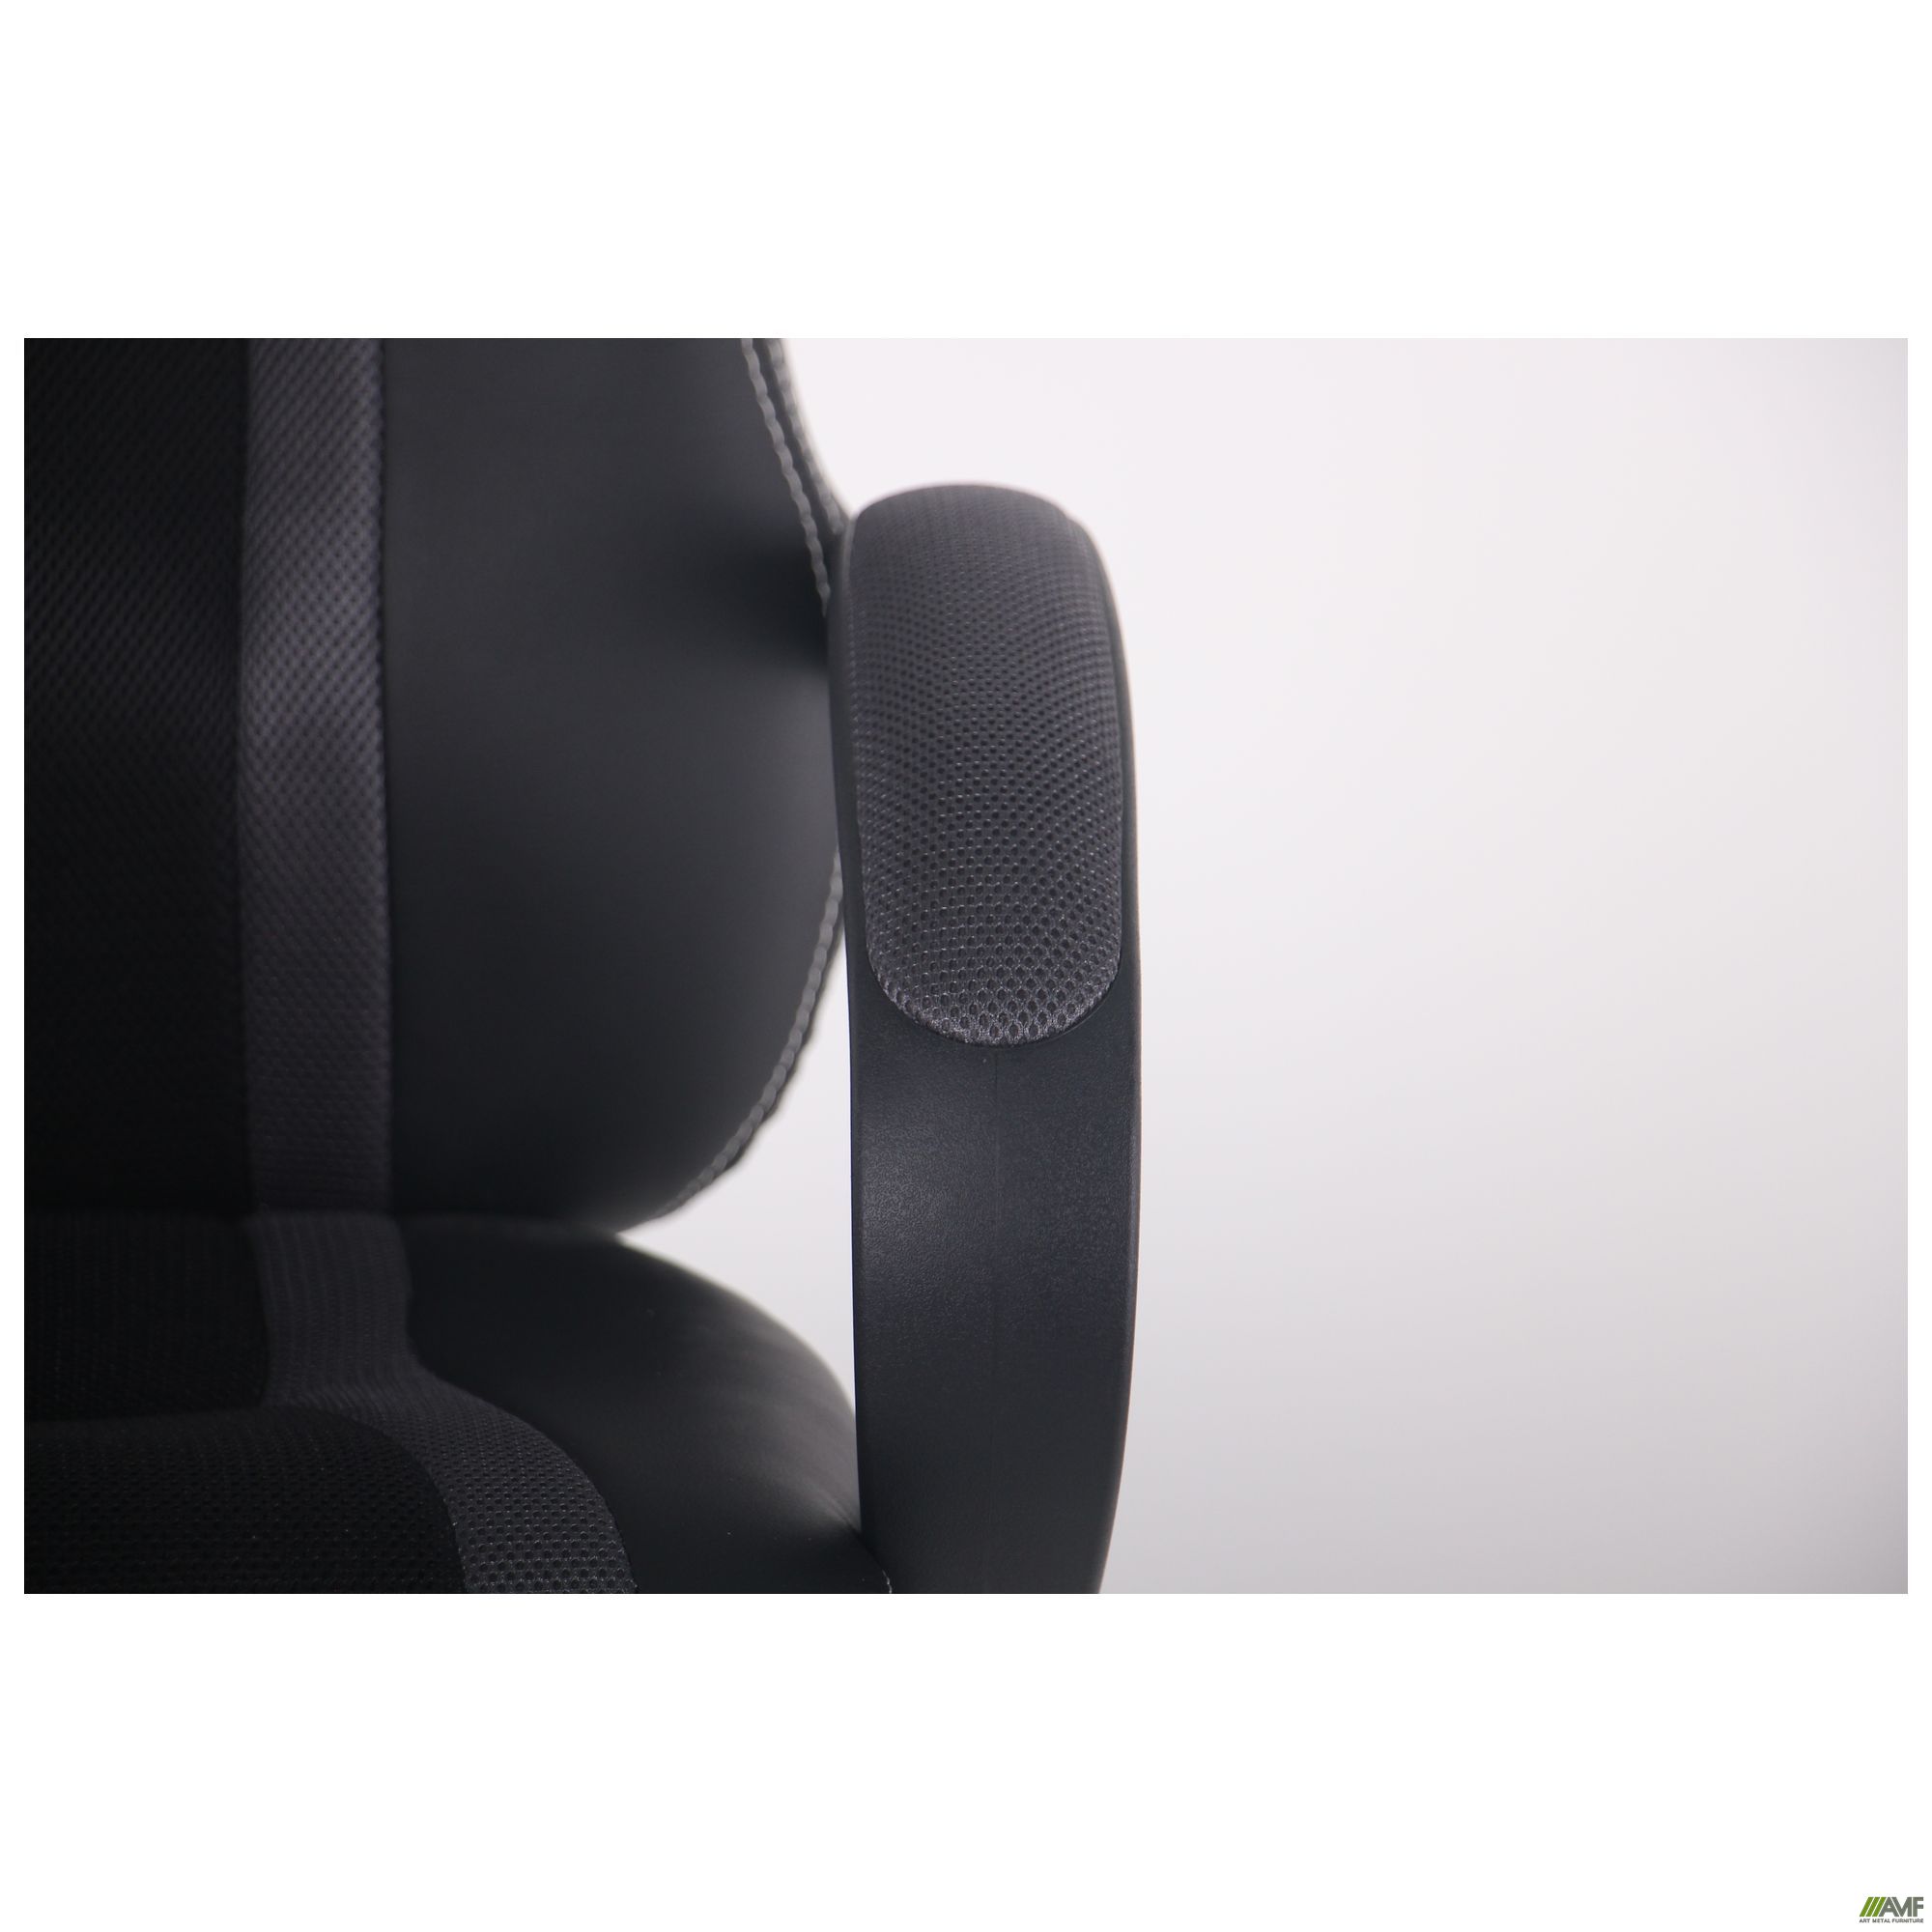 Фото 11 - Кресло Shift Неаполь N-20/Сетка черная, вставки Сетка серая 